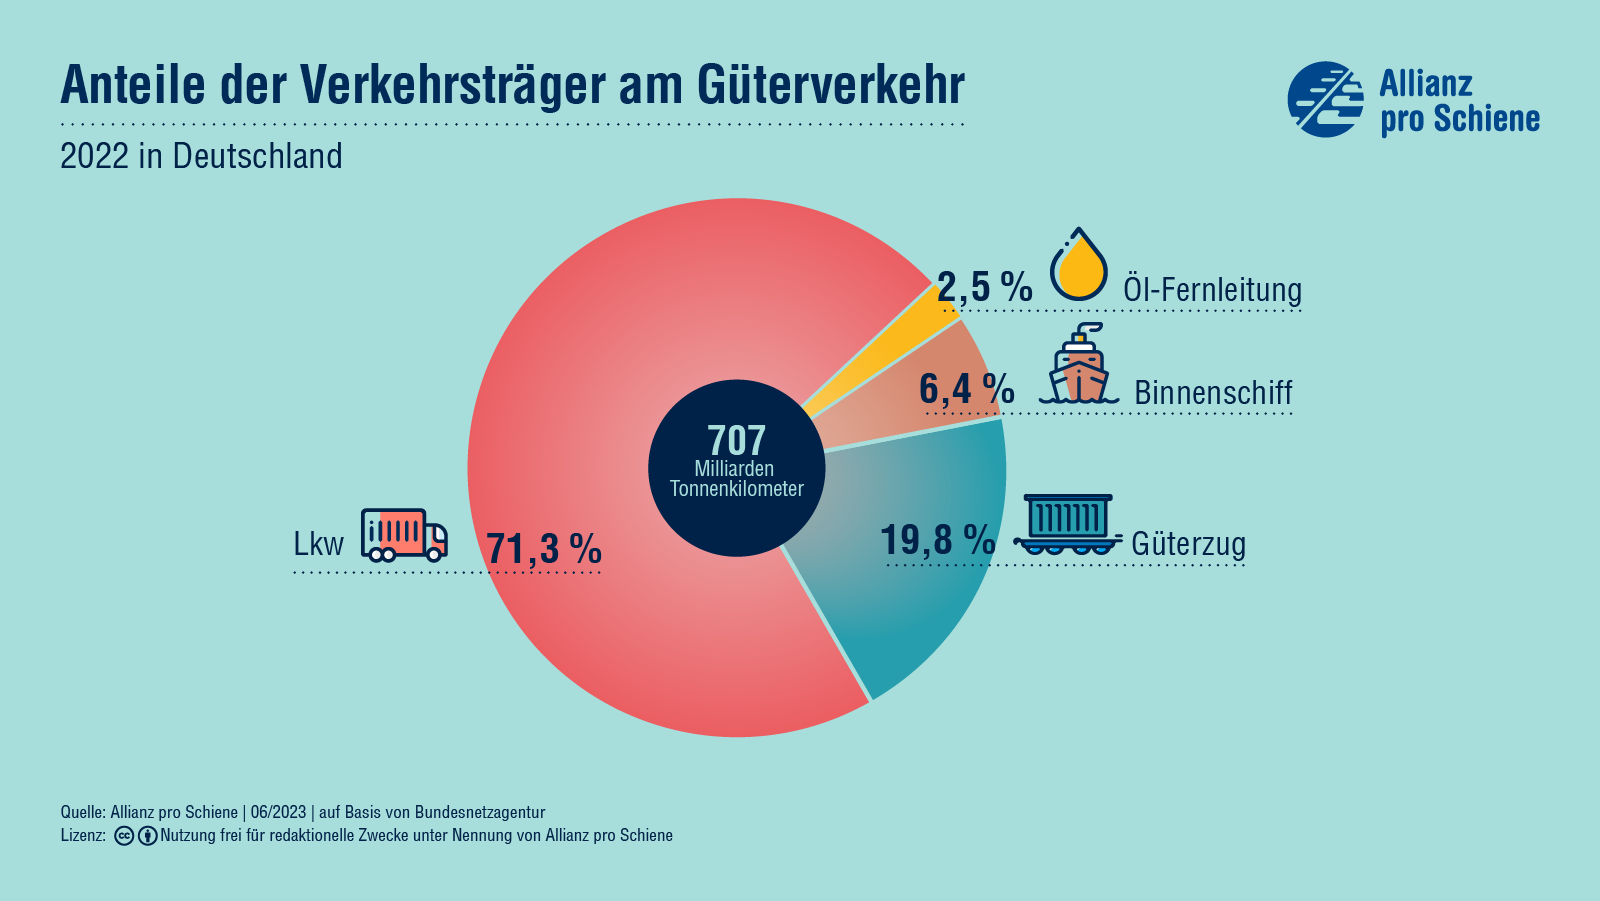 Insgesamt betrug die Gesamtverkehrsleistung des Güterverkehrs in Deutschland 2020 671 Milliarden Tonnenkilometer. Davon entfielen unter anderem 72,6% auf den LKW und 18% auf den Schienengüterverkehr.